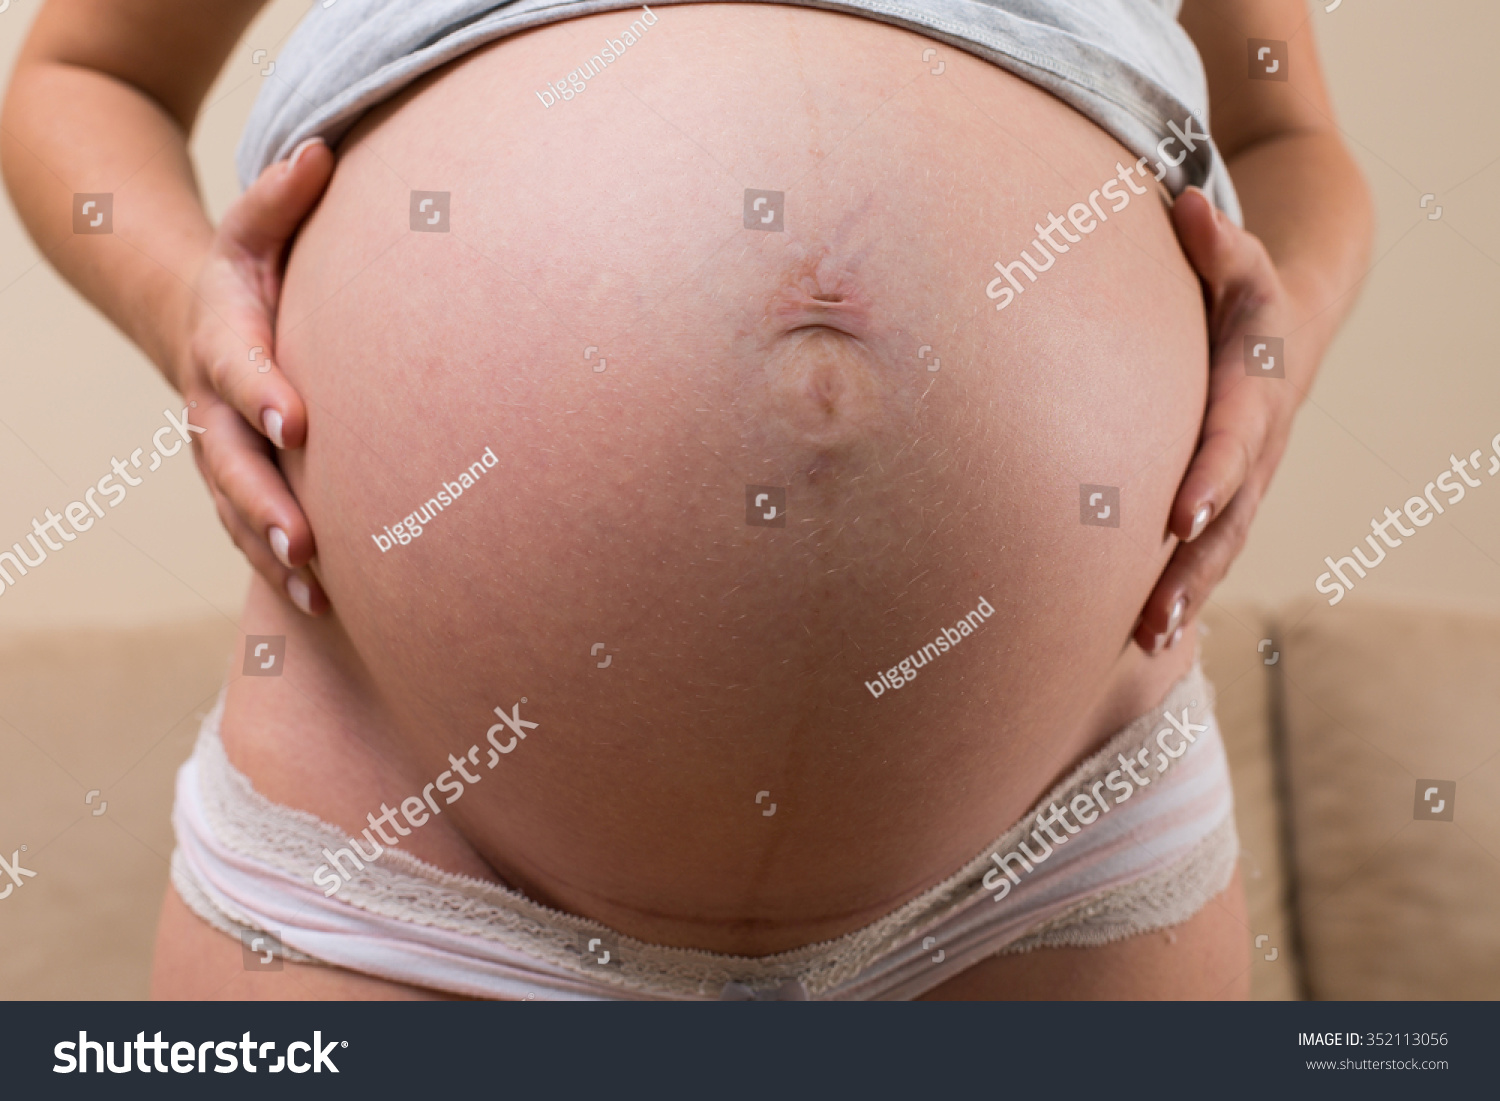 чешутся живот и груди при беременности фото 83